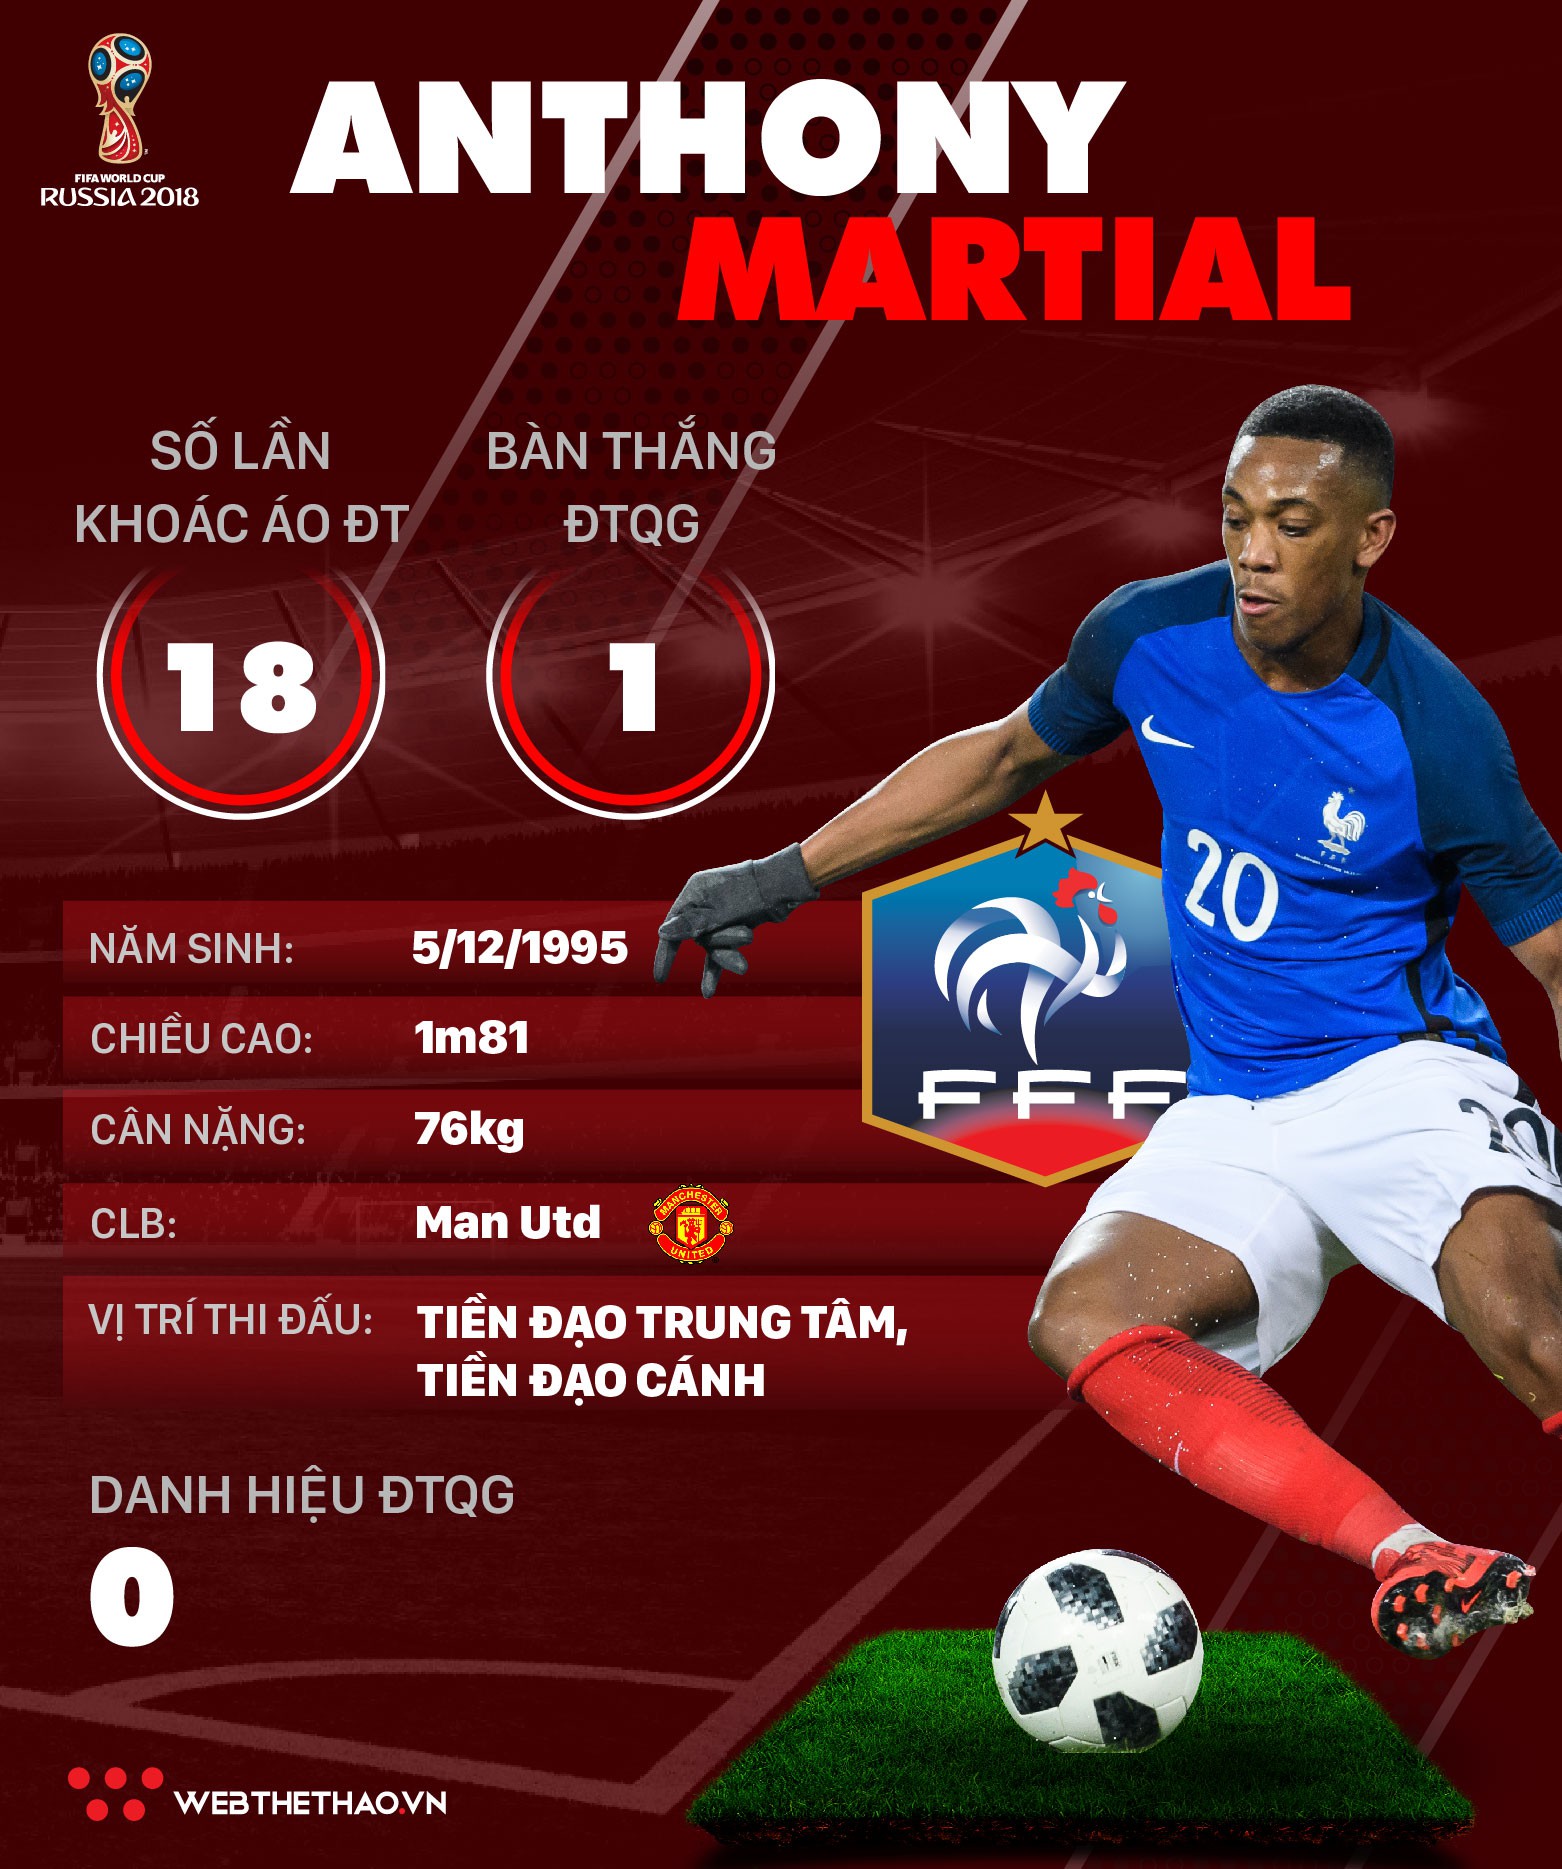 Thông tin cầu thủ Anthony Martial của ĐT Pháp dự World Cup 2018 - Ảnh 1.